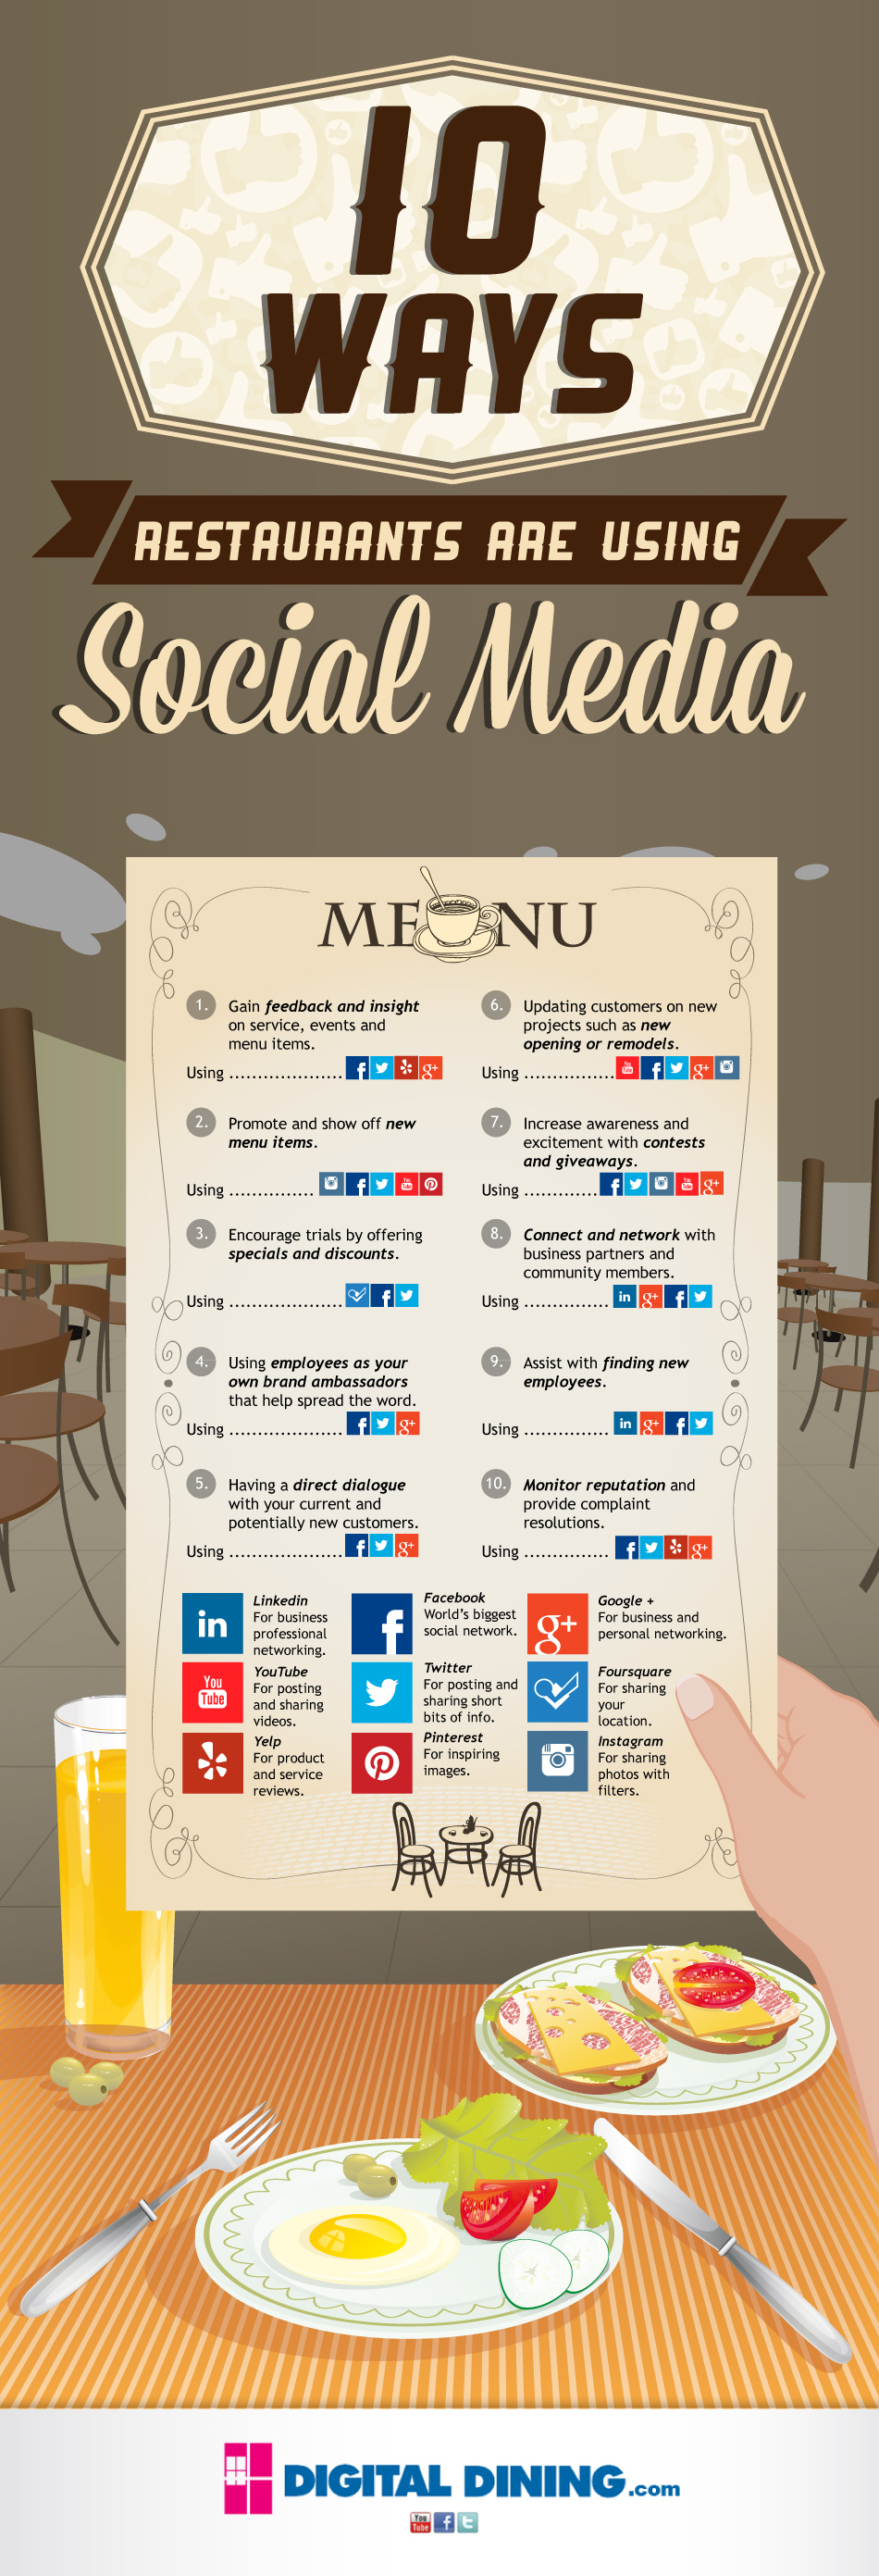 restaurants-infographic-for-social-media1